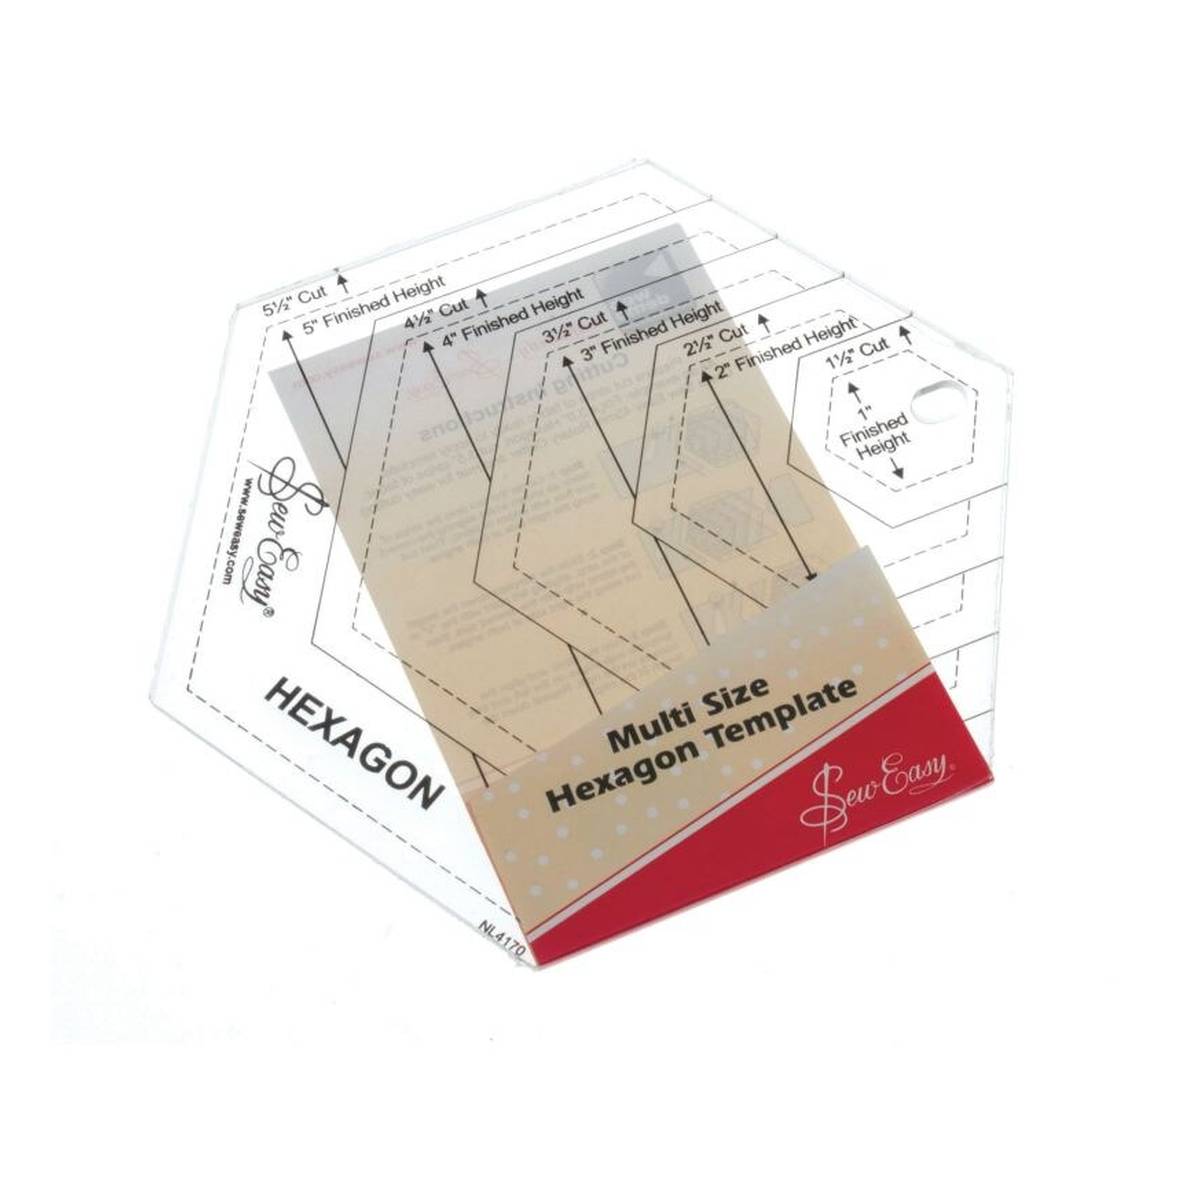 Buy Sew Easy Template Plastic Graph Sheet for GBP 4.50, Hobbycraft UK